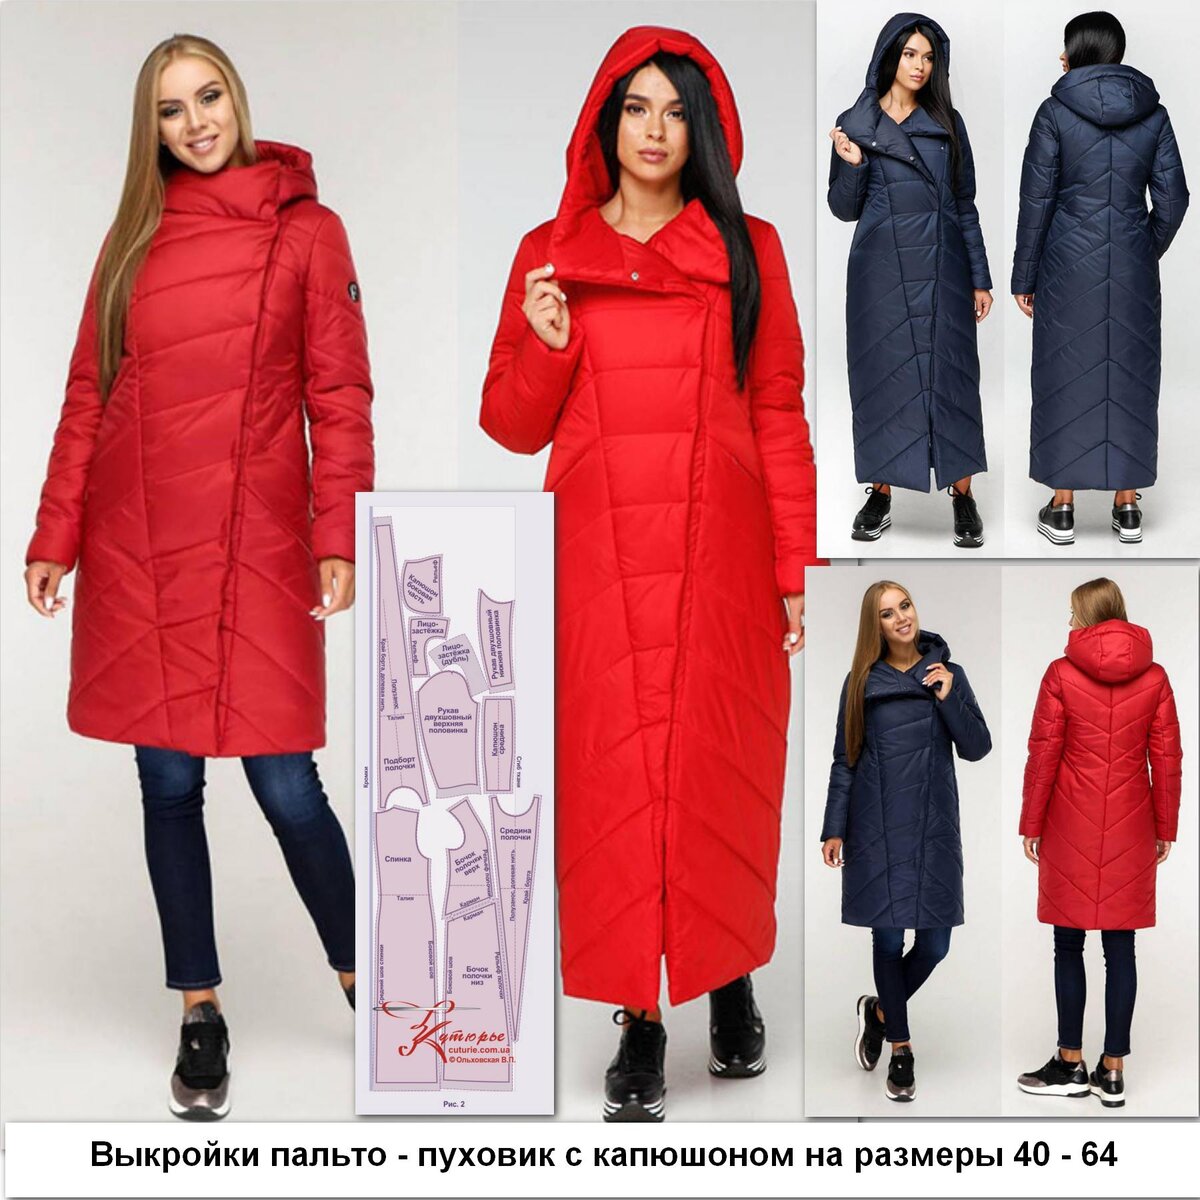 Бесплатно выкройки женского пальто. Модели для полных женщин с выкройками.